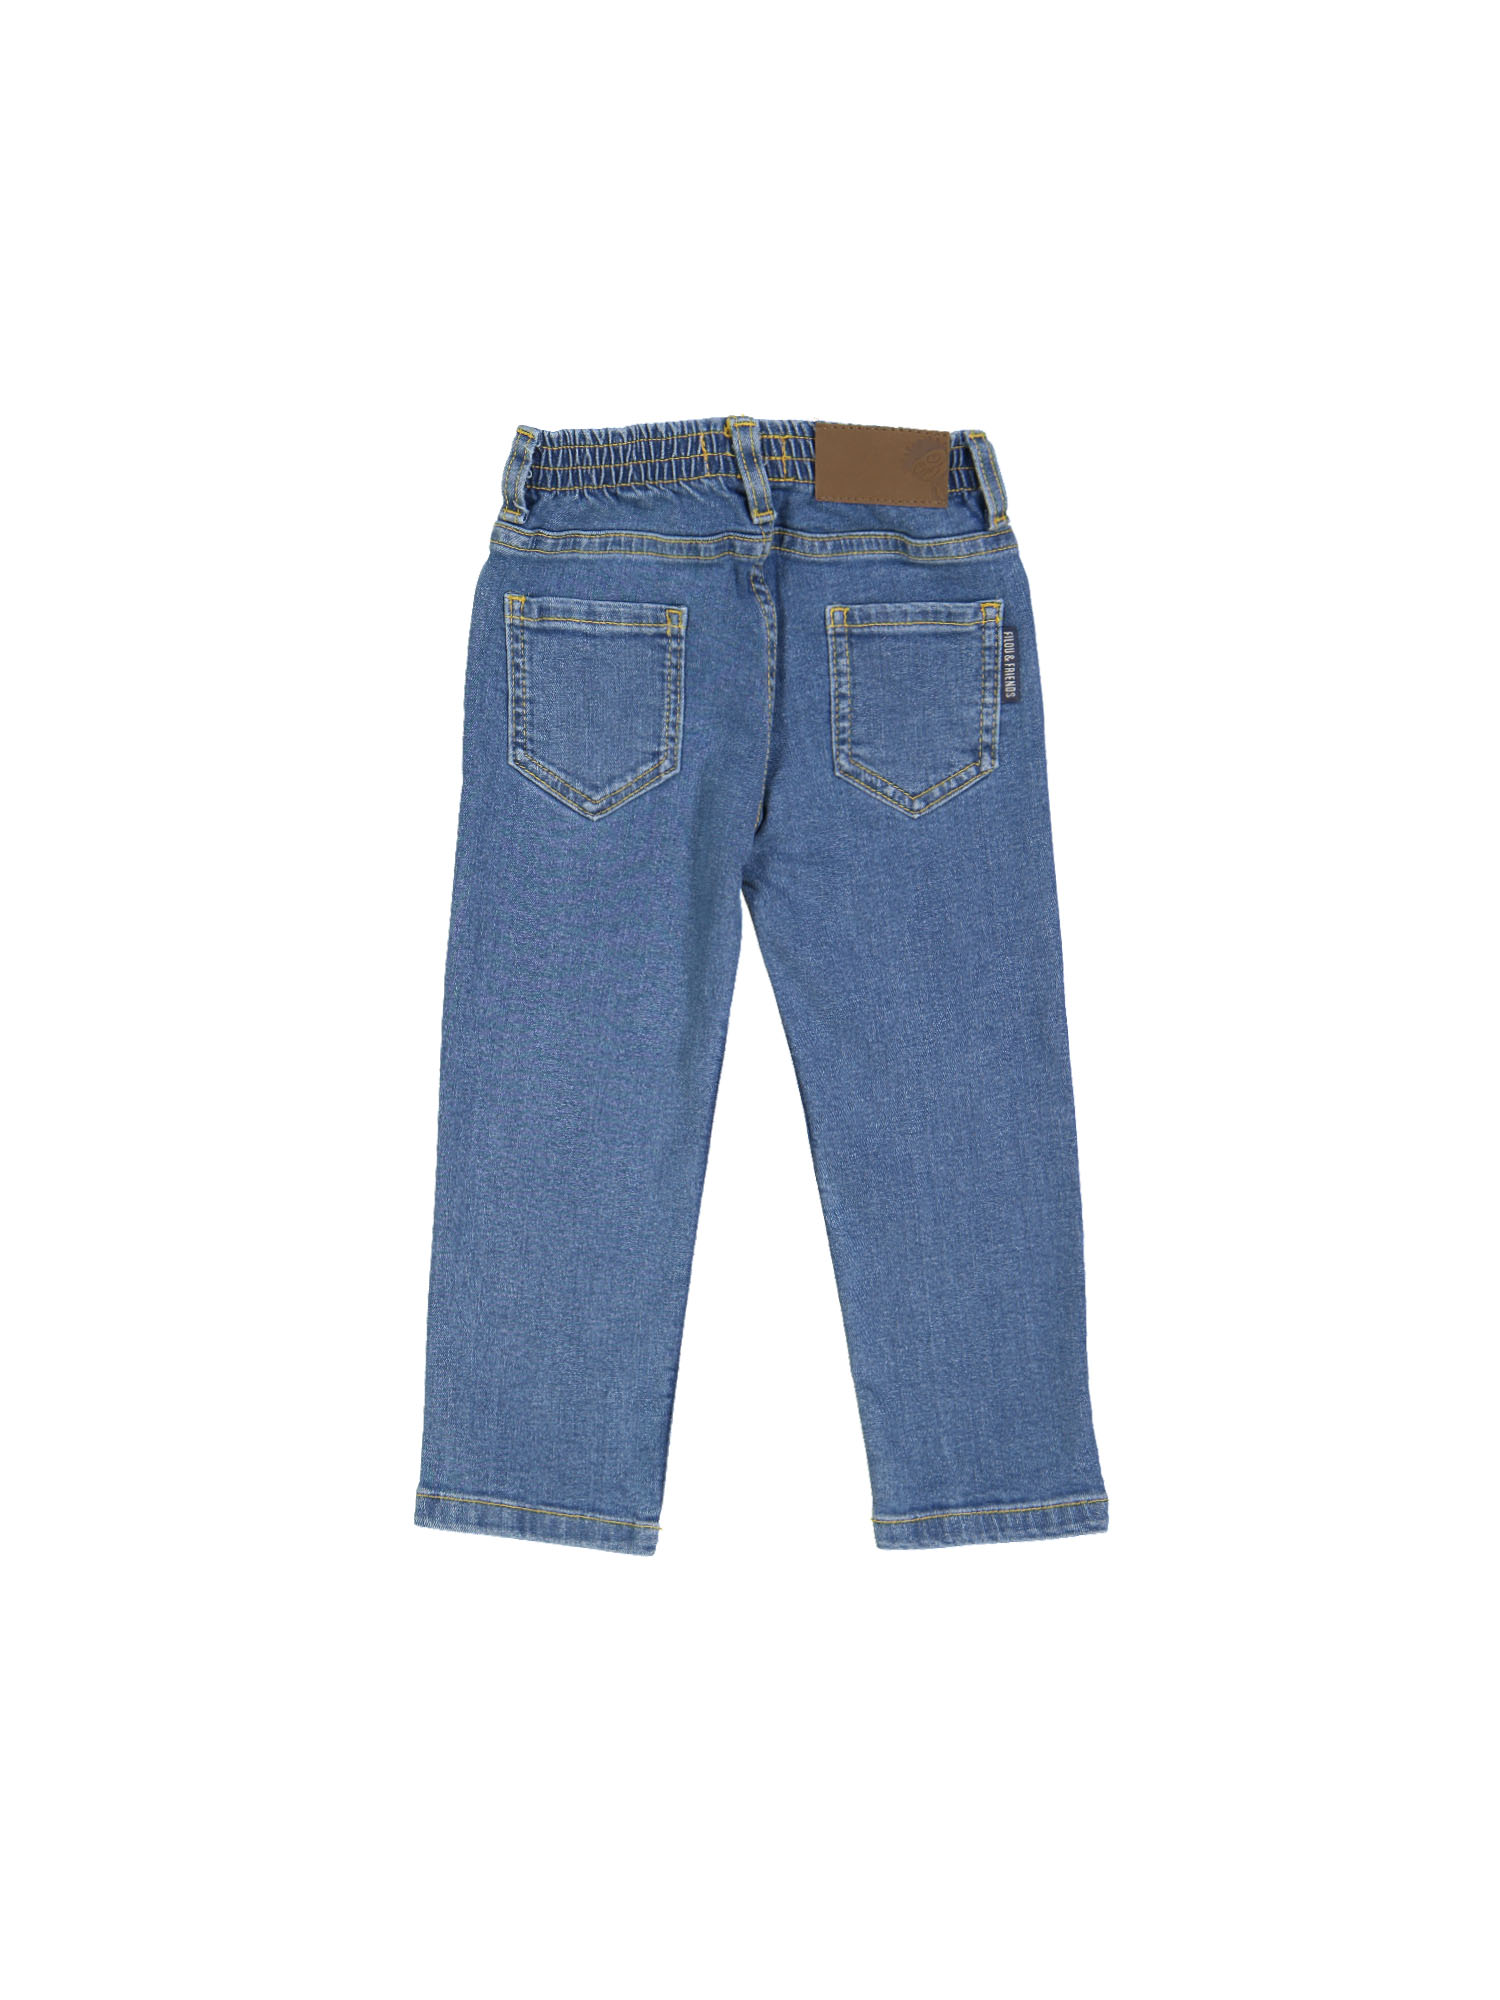 jeans regular bleach blauw rekker 06j